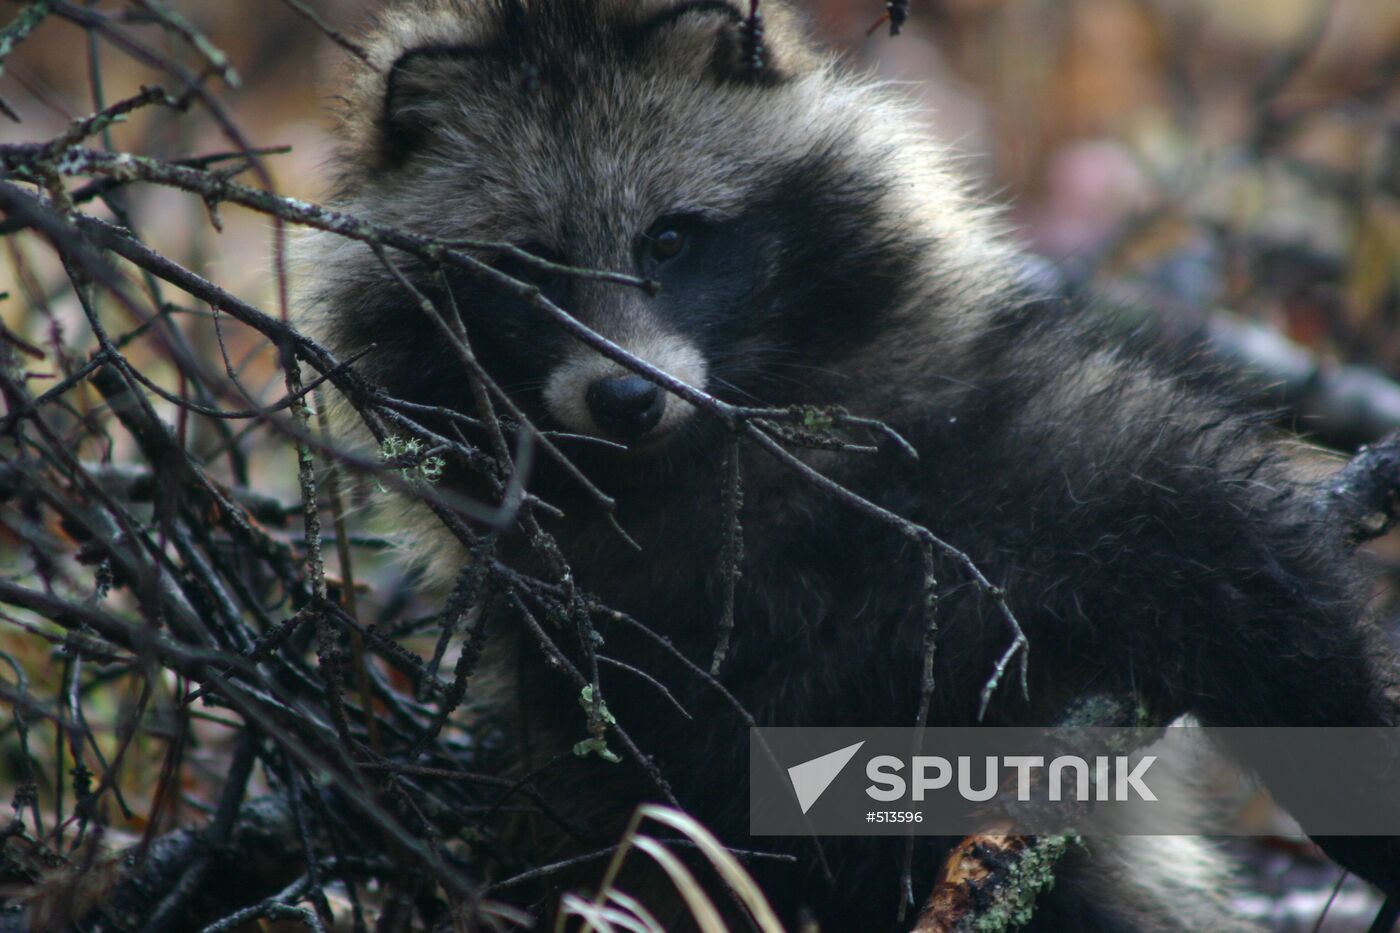 Animals of Ussuriysky Nature Preserve